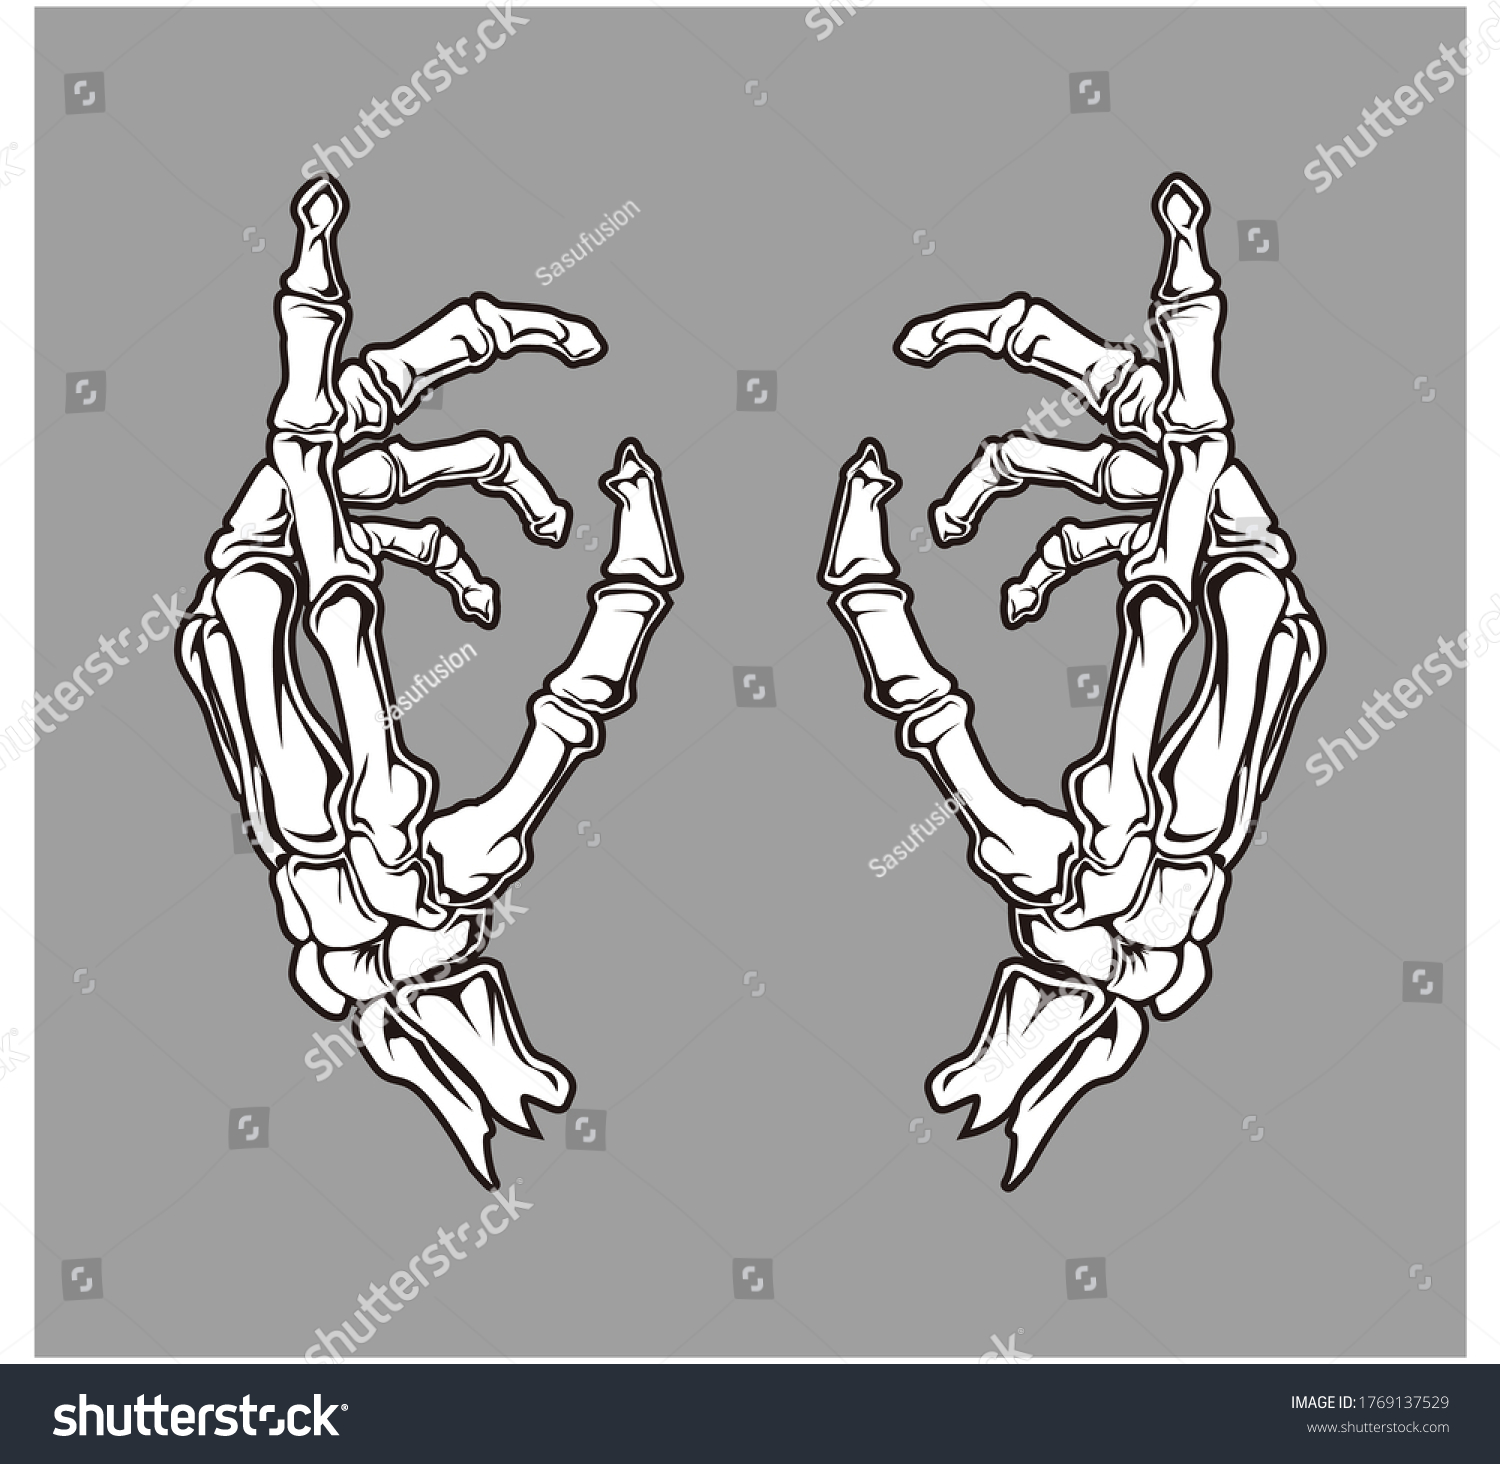 Касание рук скелетов